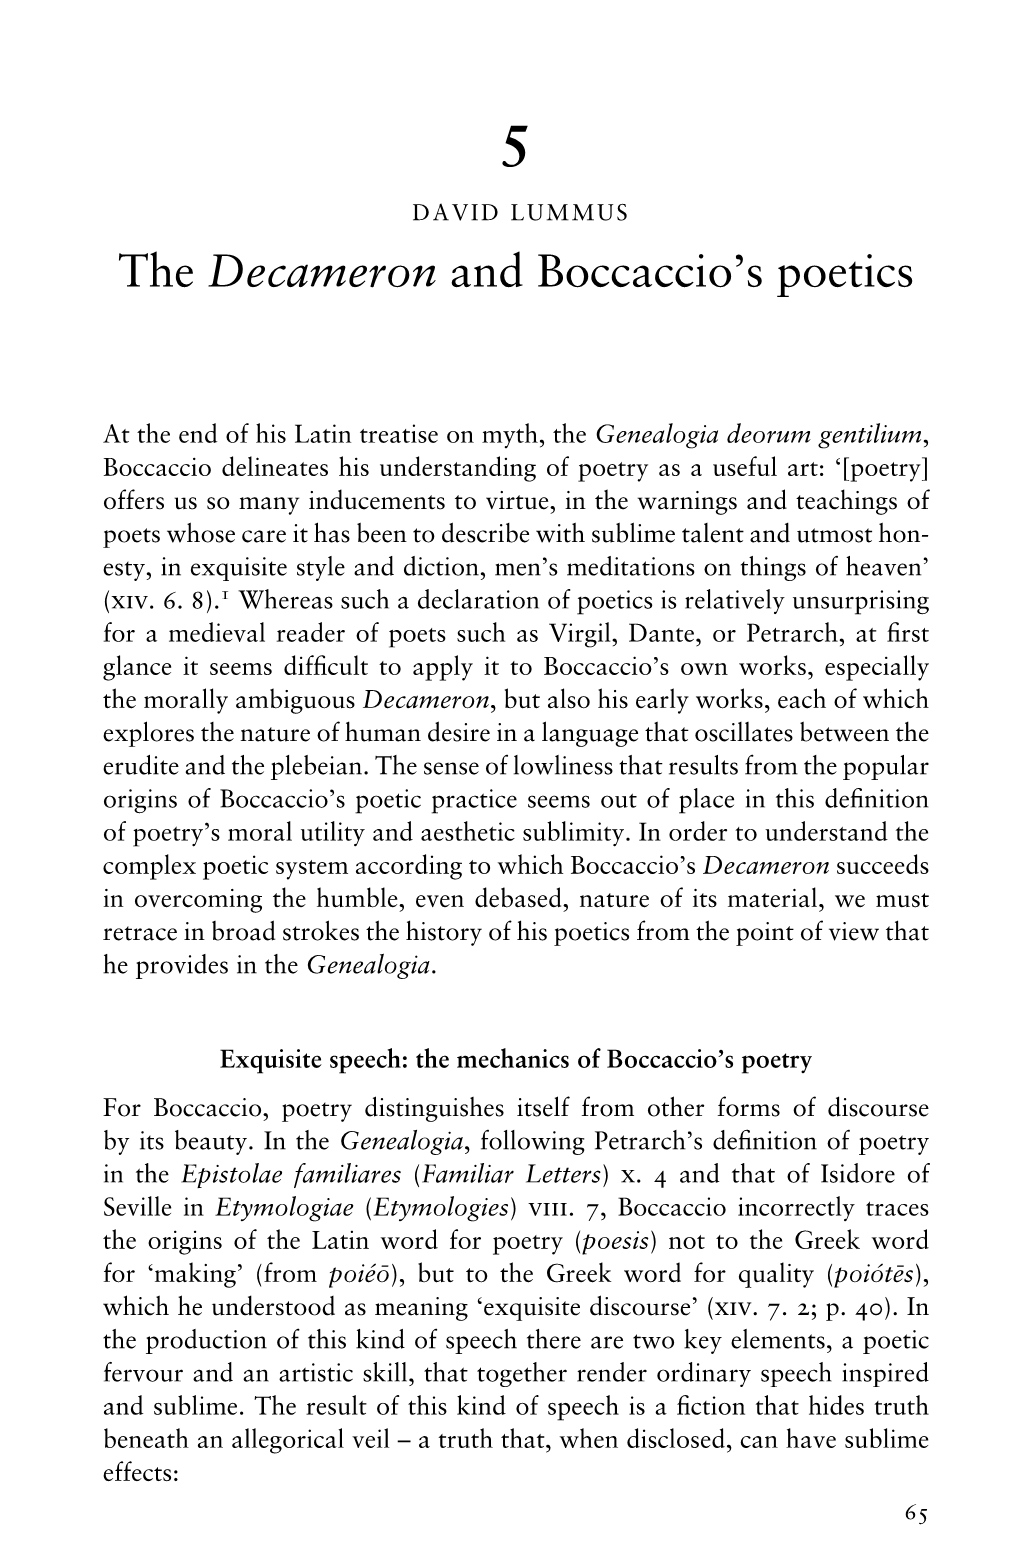 The Decameron and Boccaccio's Poetics